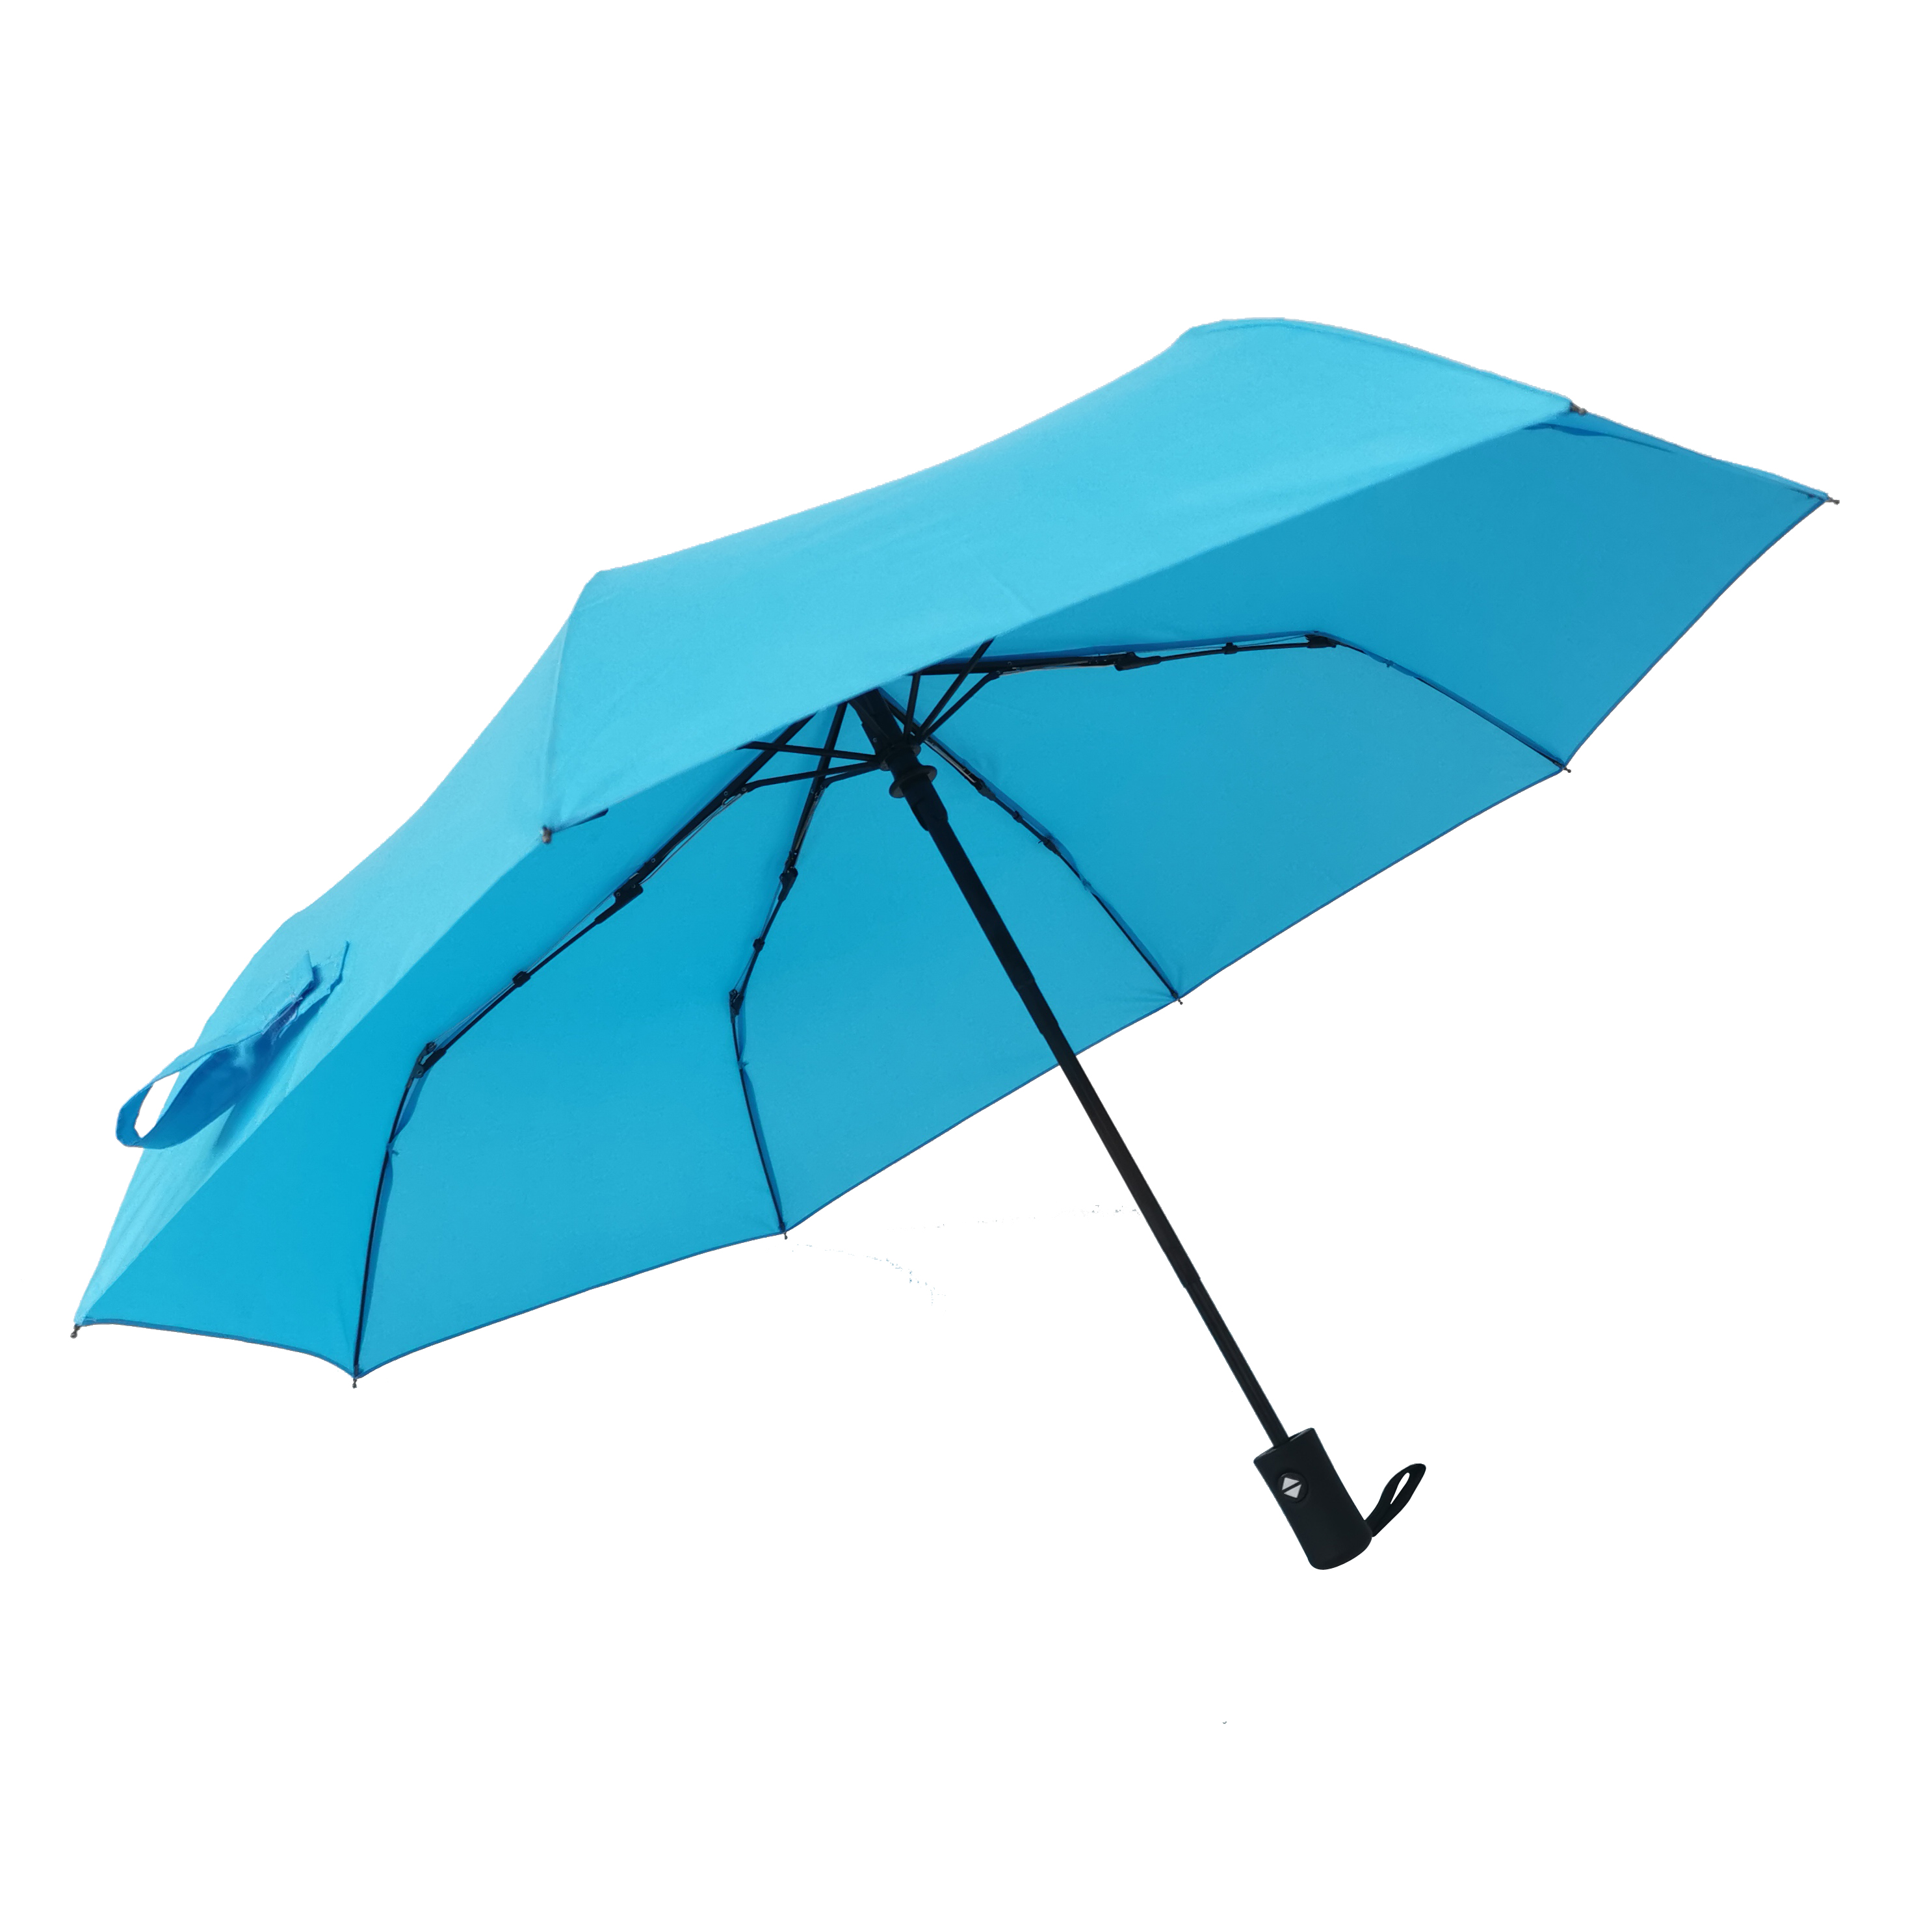 Tsab ntawv xov xwm no tshwm sim thawj zaug https://www.hodaumbrella.com/21-customization-full-automatic-3-folding-sunrain-umbrella-for-adult-polyester-pongee-plastic-handle-6k-8k-product/